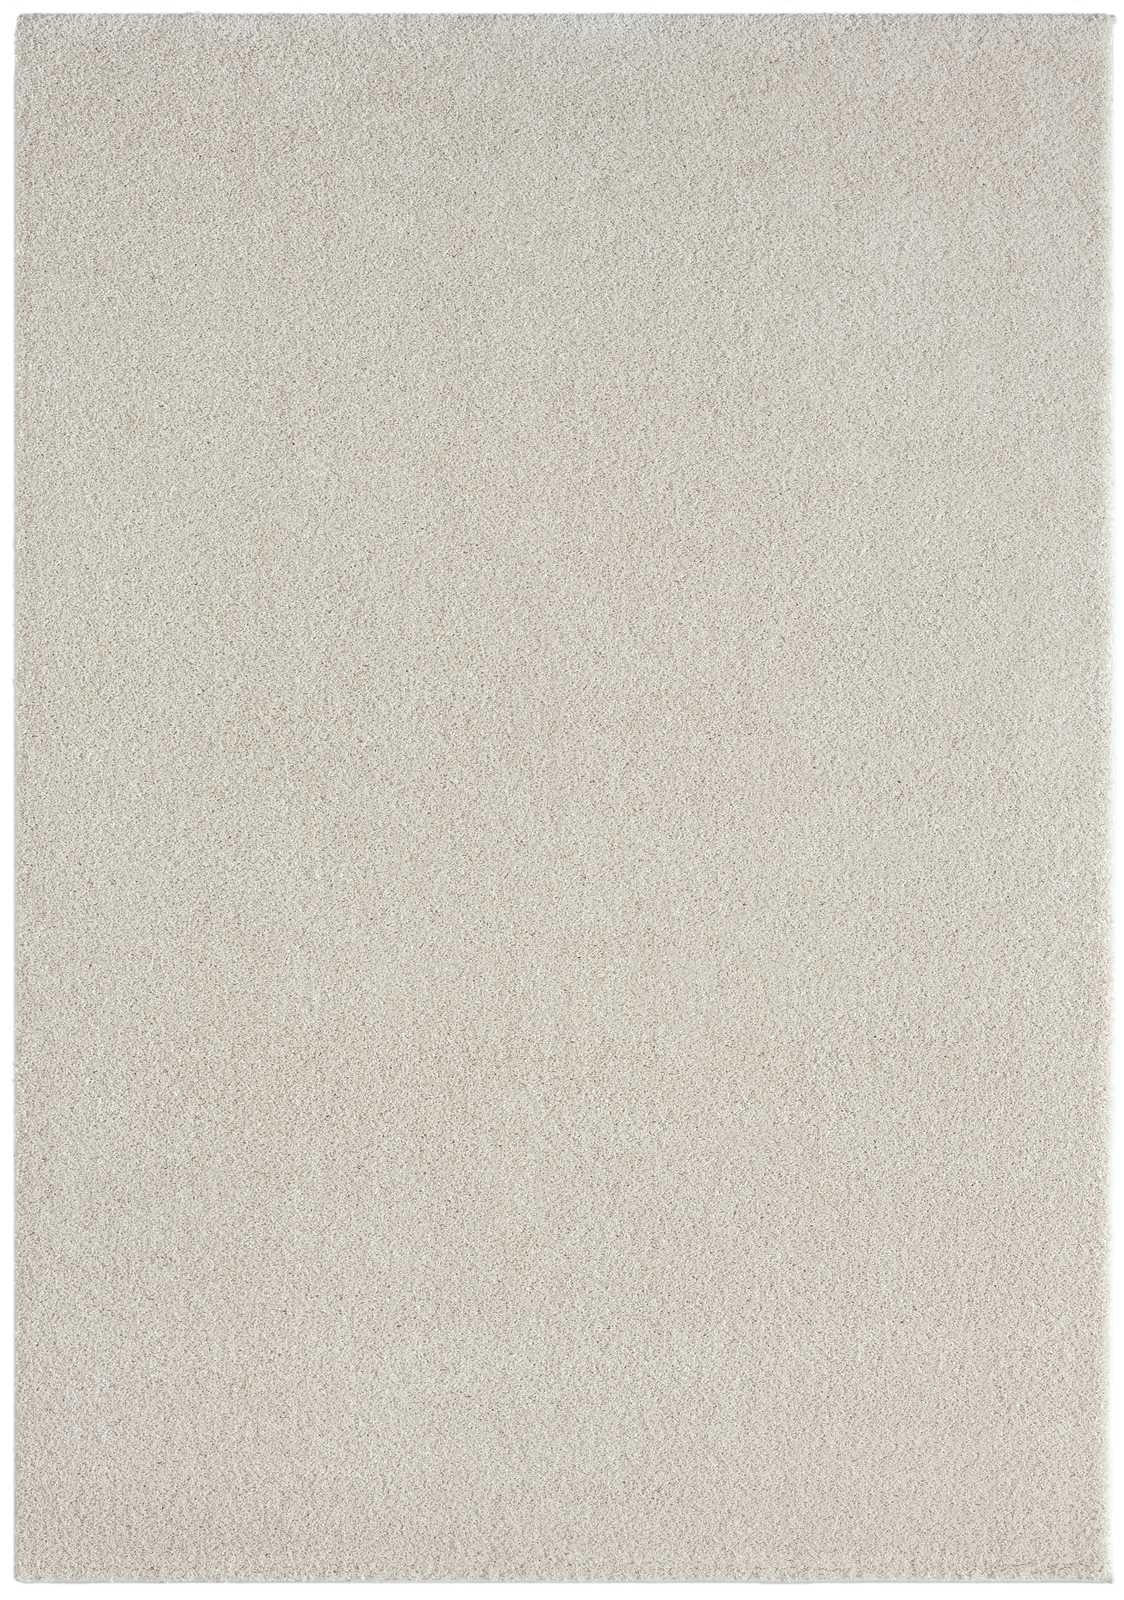             Cremefarbener Kurzflor Teppich – 290 x 200 cm
        